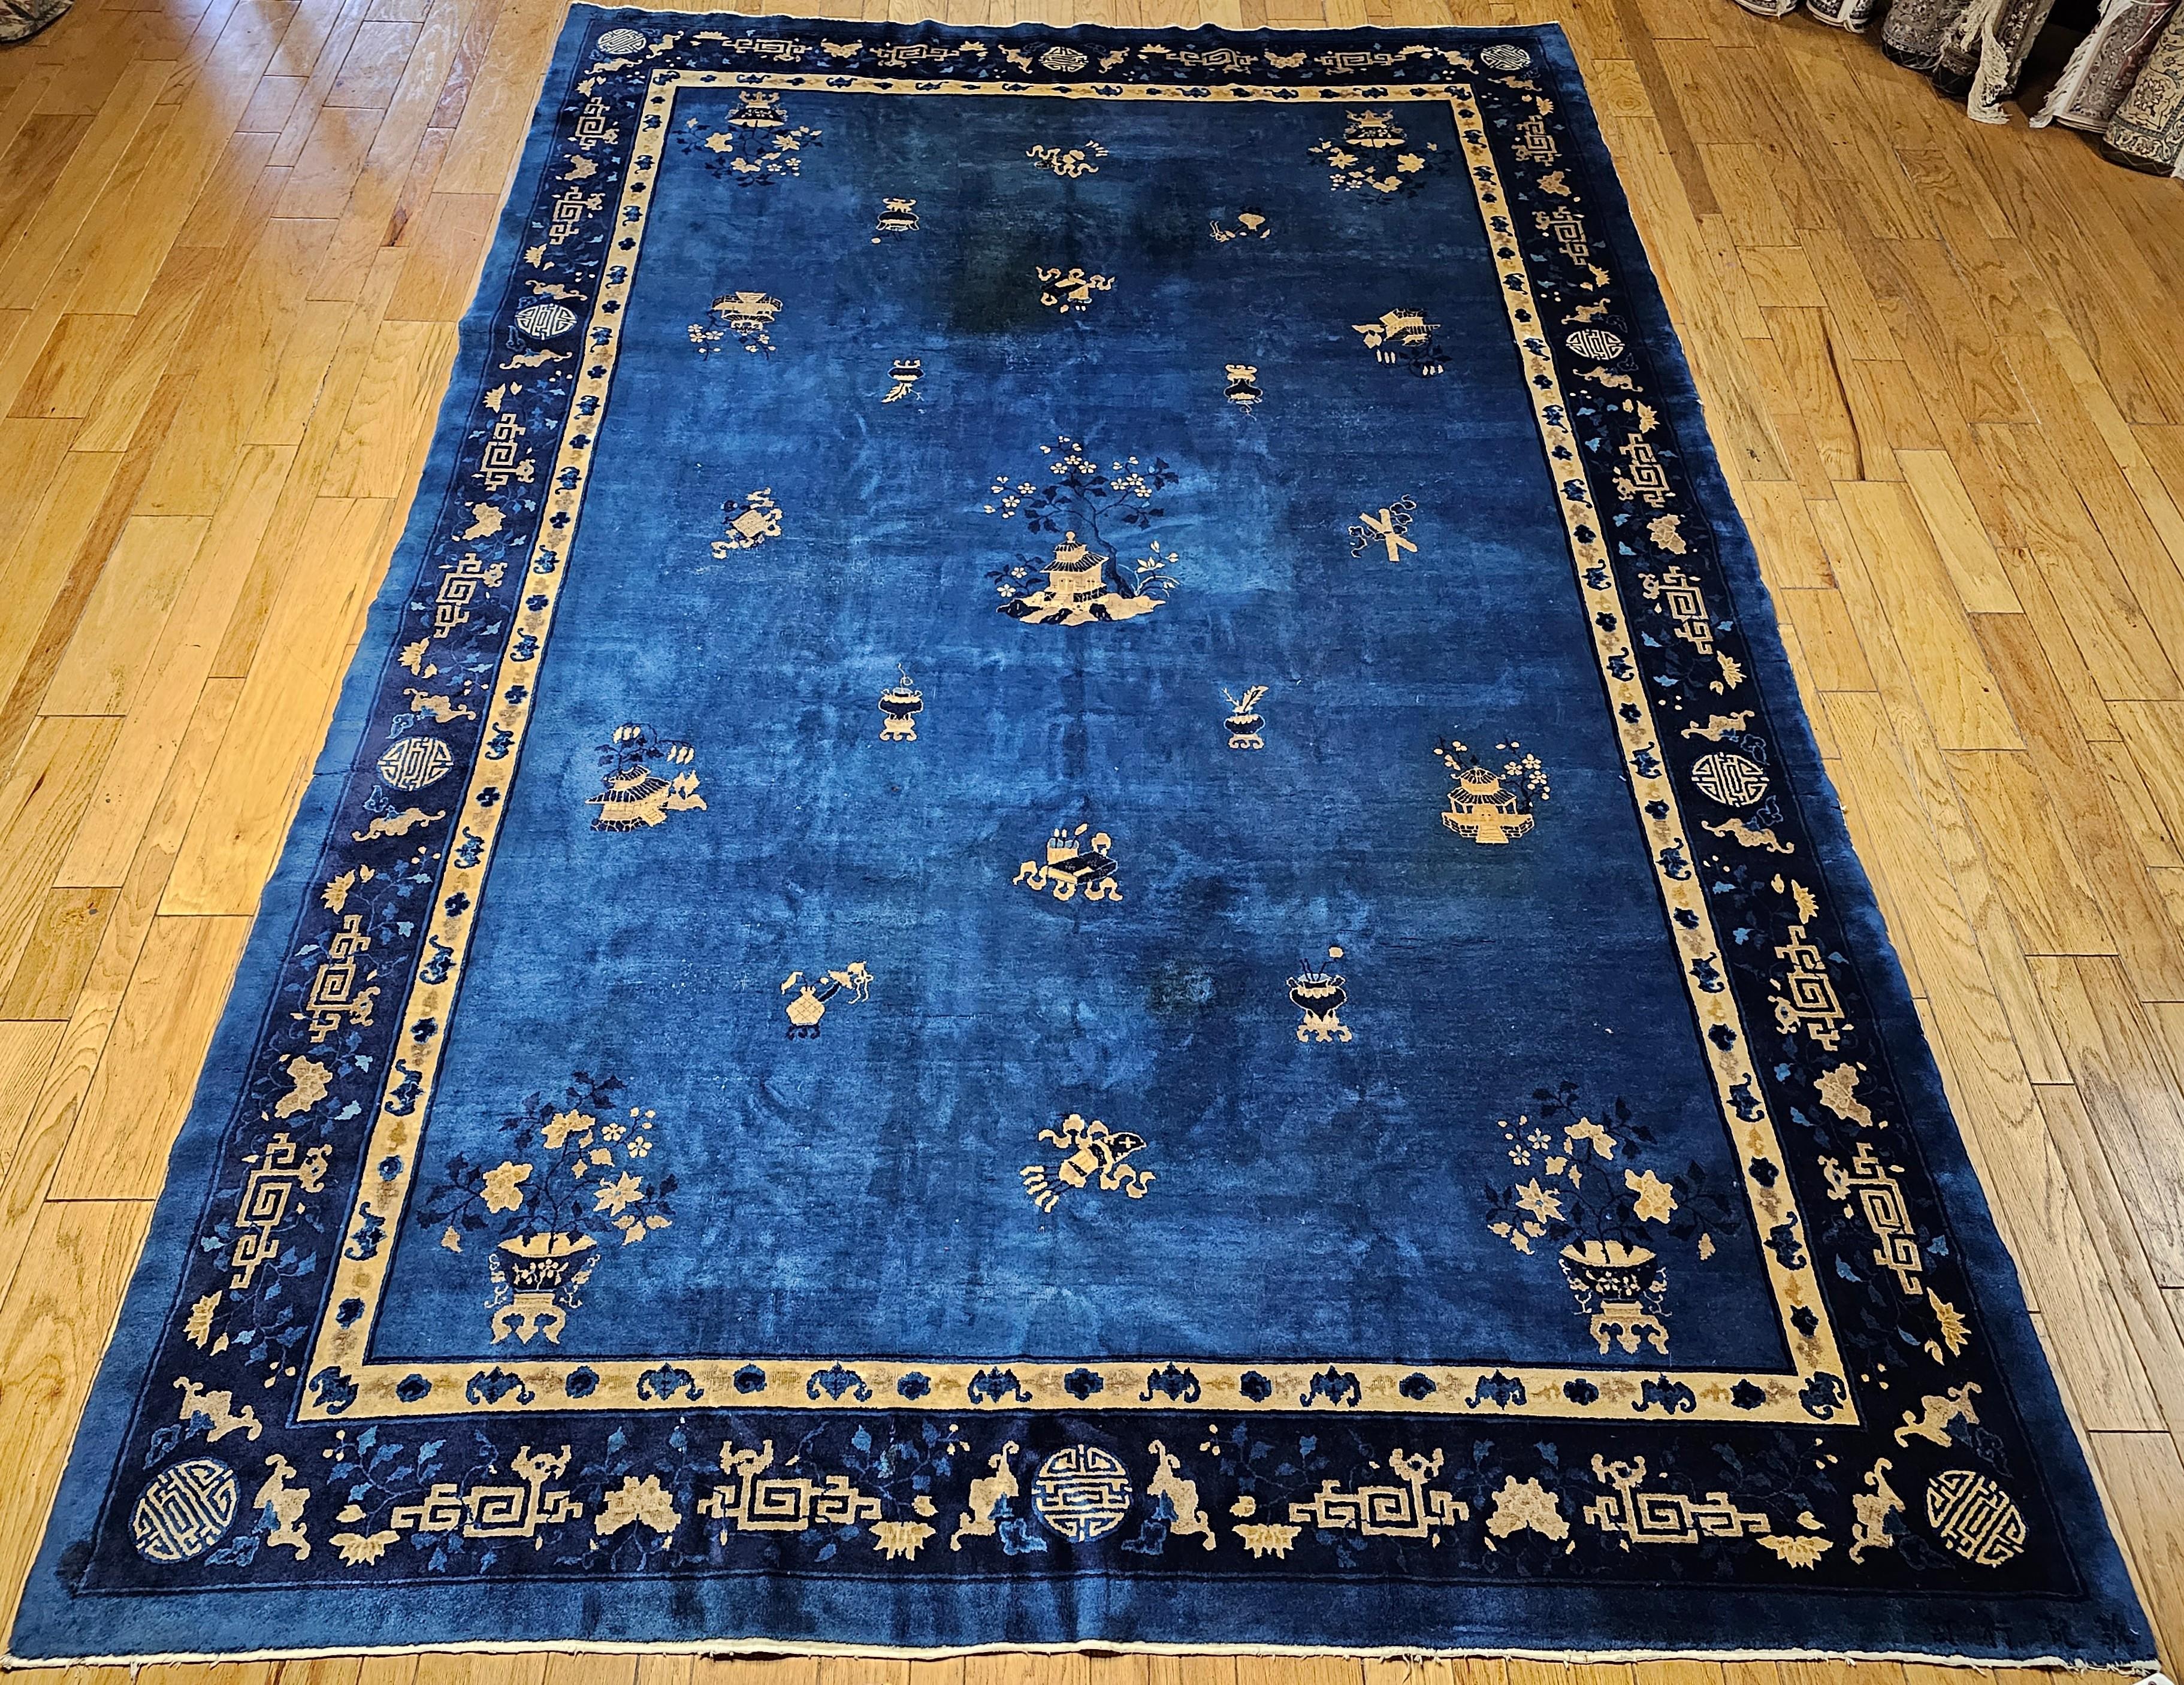 Magnifique tapis chinois Art déco du premier quart des années 1900. Le tapis apporterait de l'élégance par sa sobriété.  Le tapis présente un champ de couleur bleu royal avec des objets et des symboles de bon augure, notamment des brûleurs d'encens,